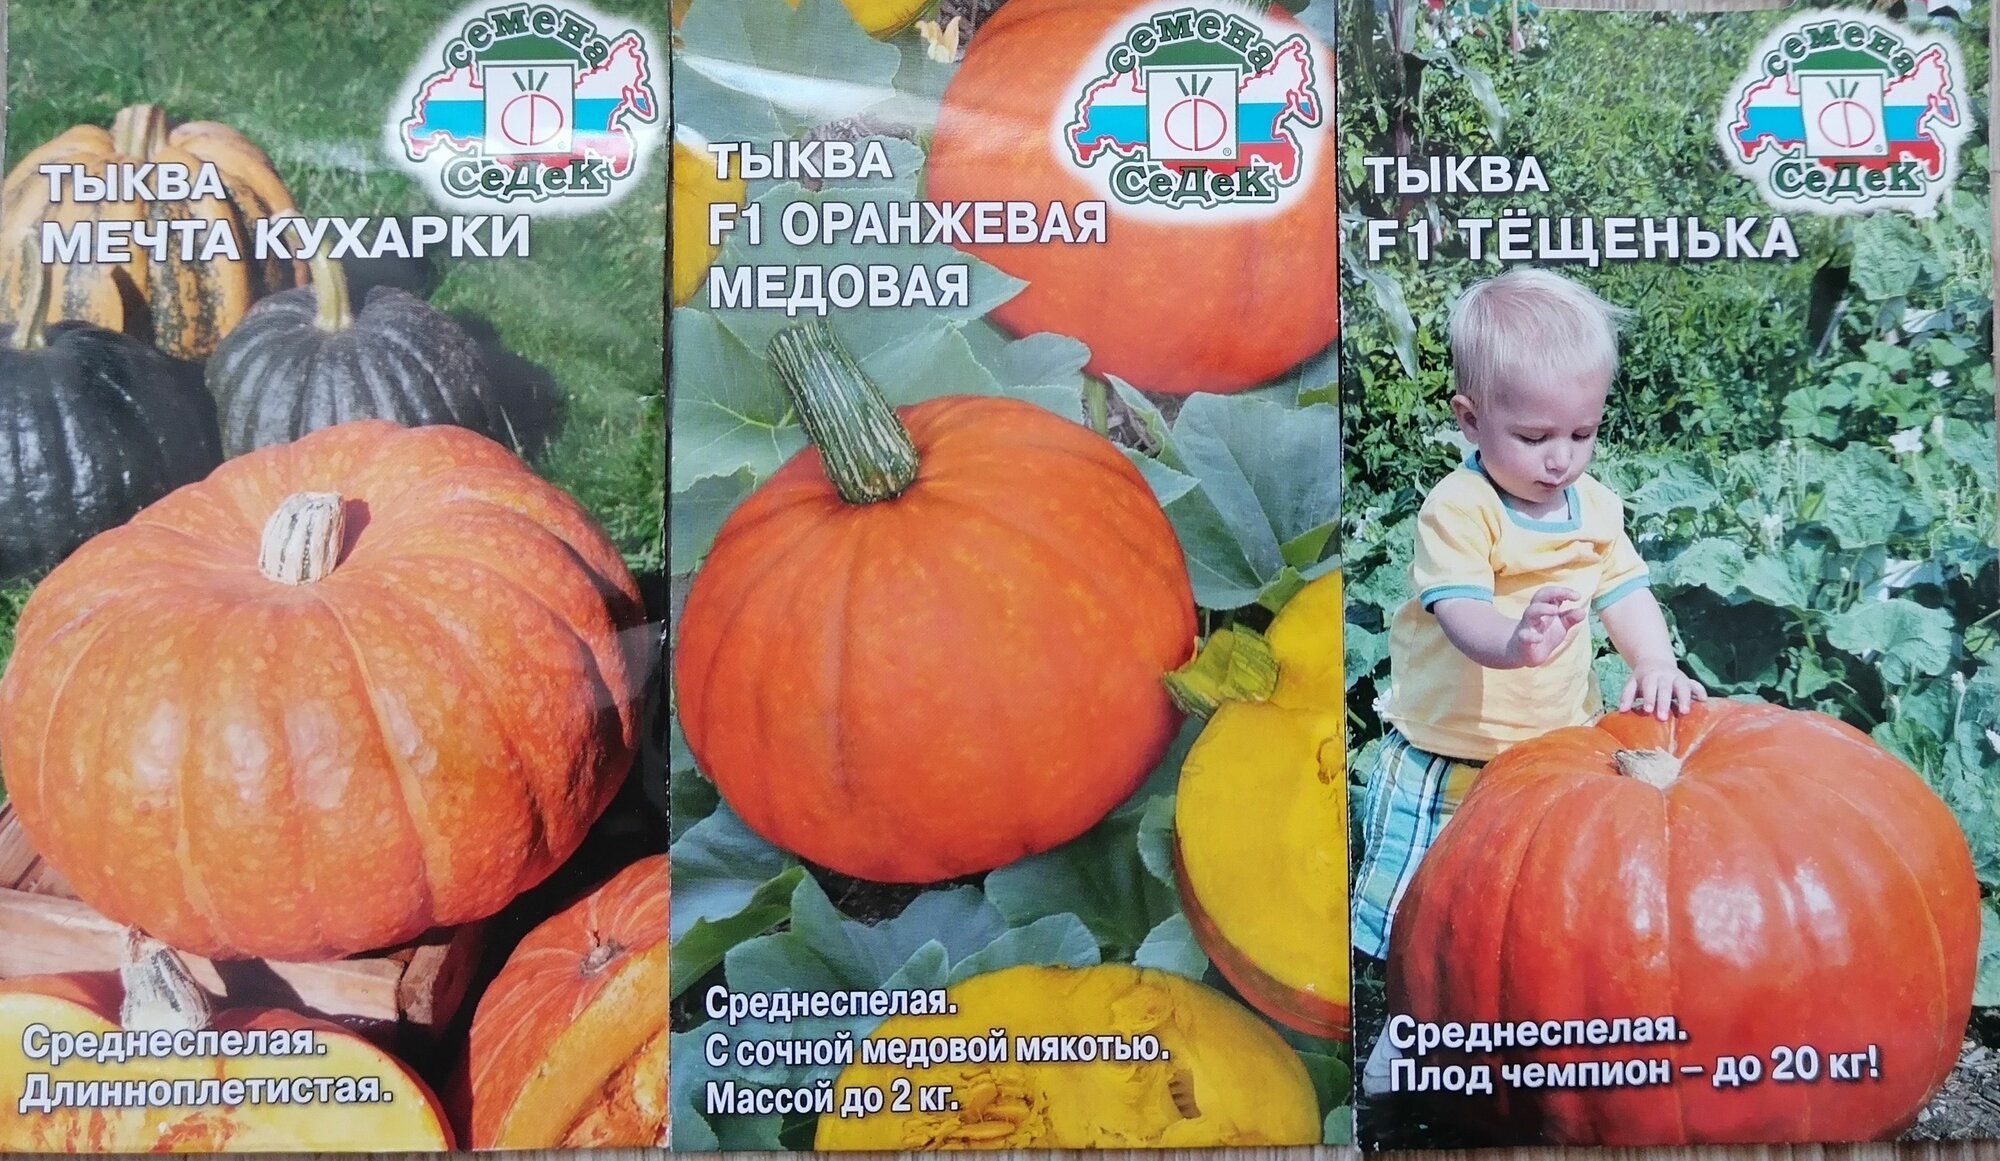 Набор из 3х сортов высокоурожайных, крупноплодных тыкв (Тёщенька+Мечта кухарки+Оранжевая Медовая) от агрофирмы СеДеК